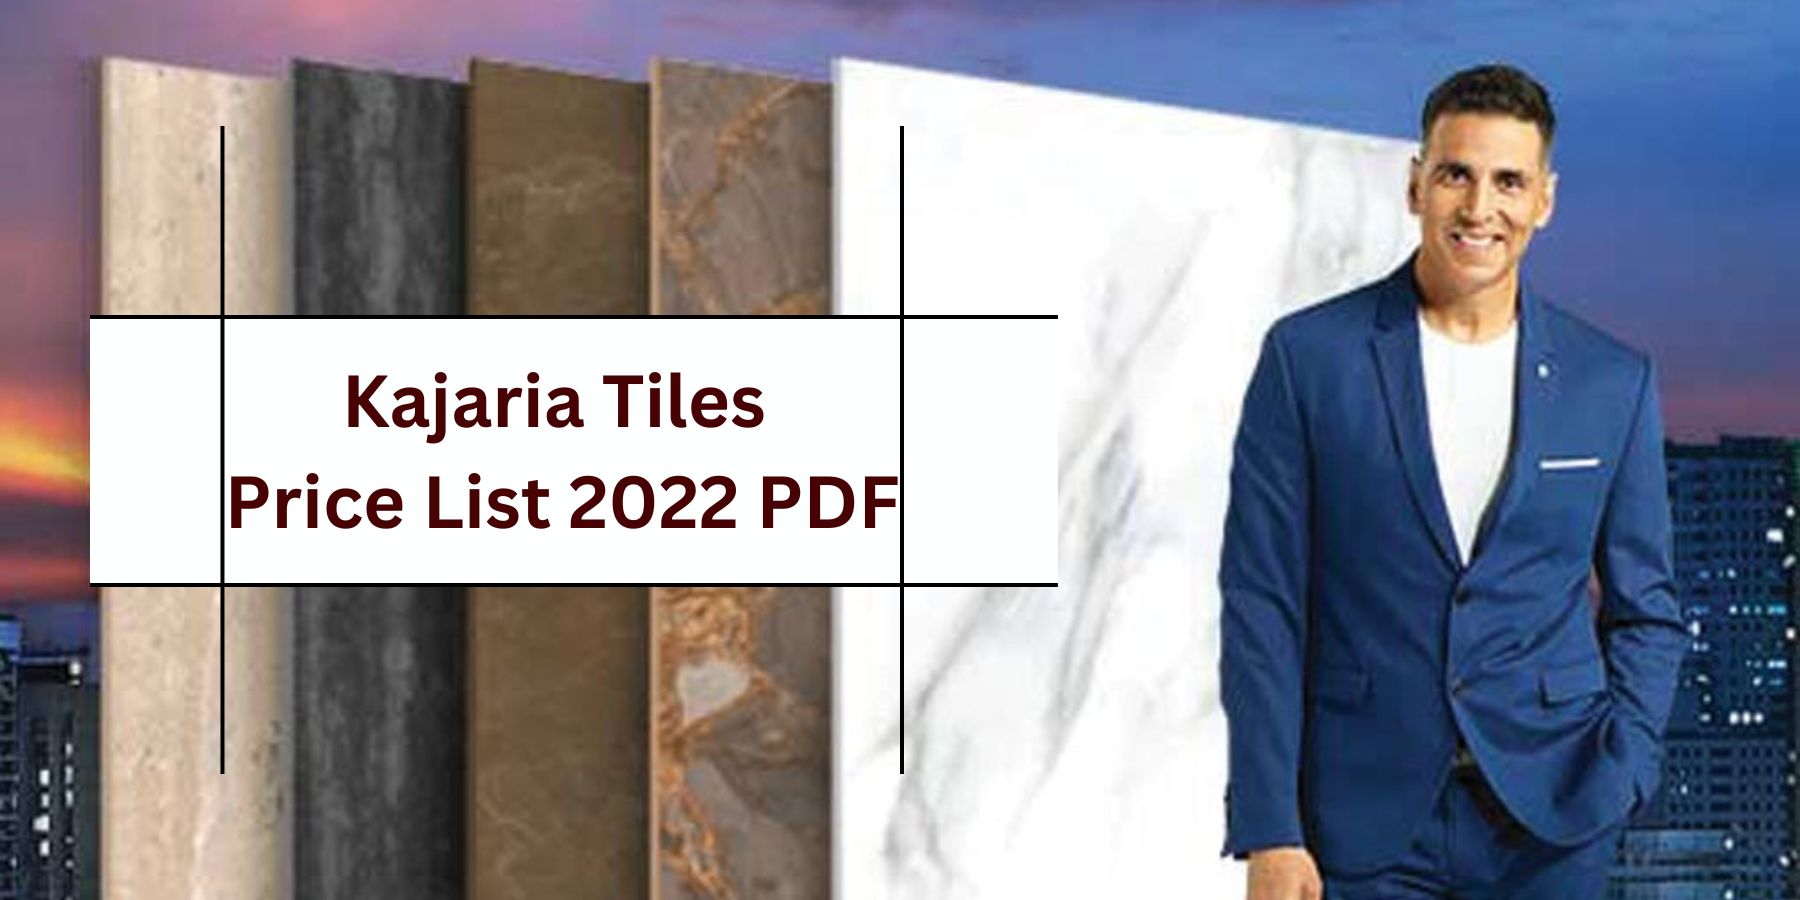 Kajaria Tiles Price List 2022 PDF